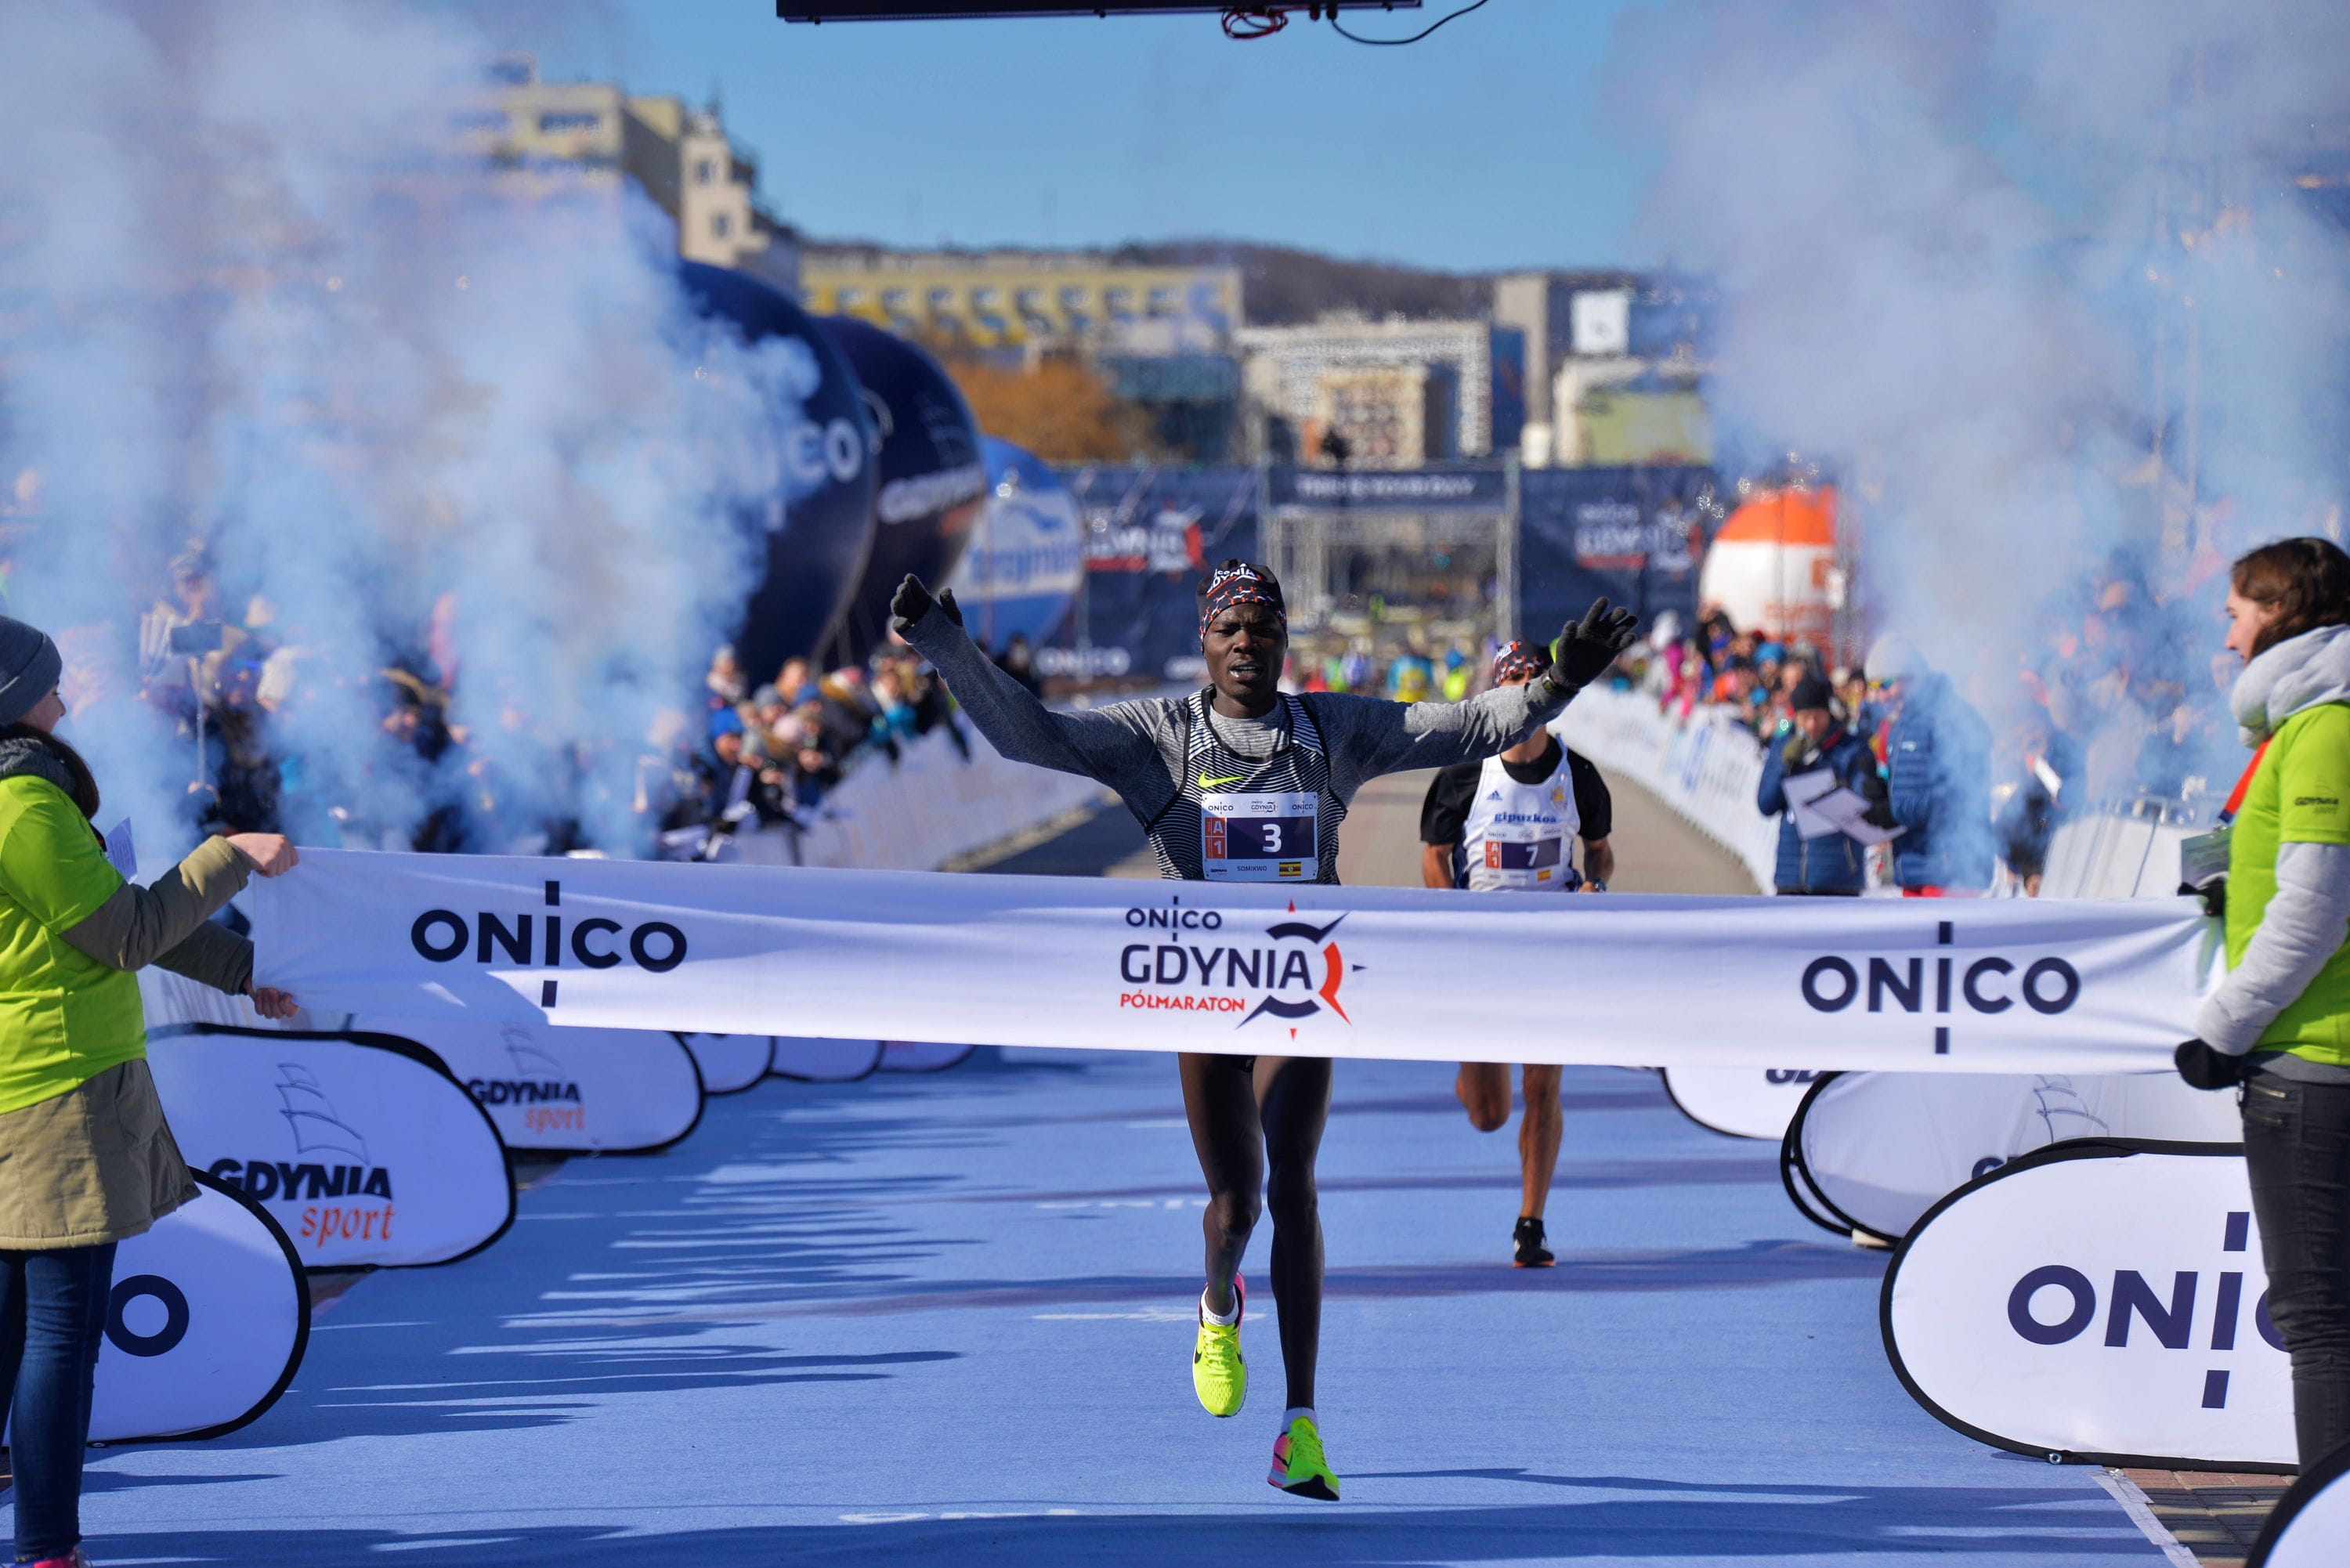 W Niedziele Wystartuje Gdynia Polmaraton Proba Generalna Przed Mistrzostwami Swiata